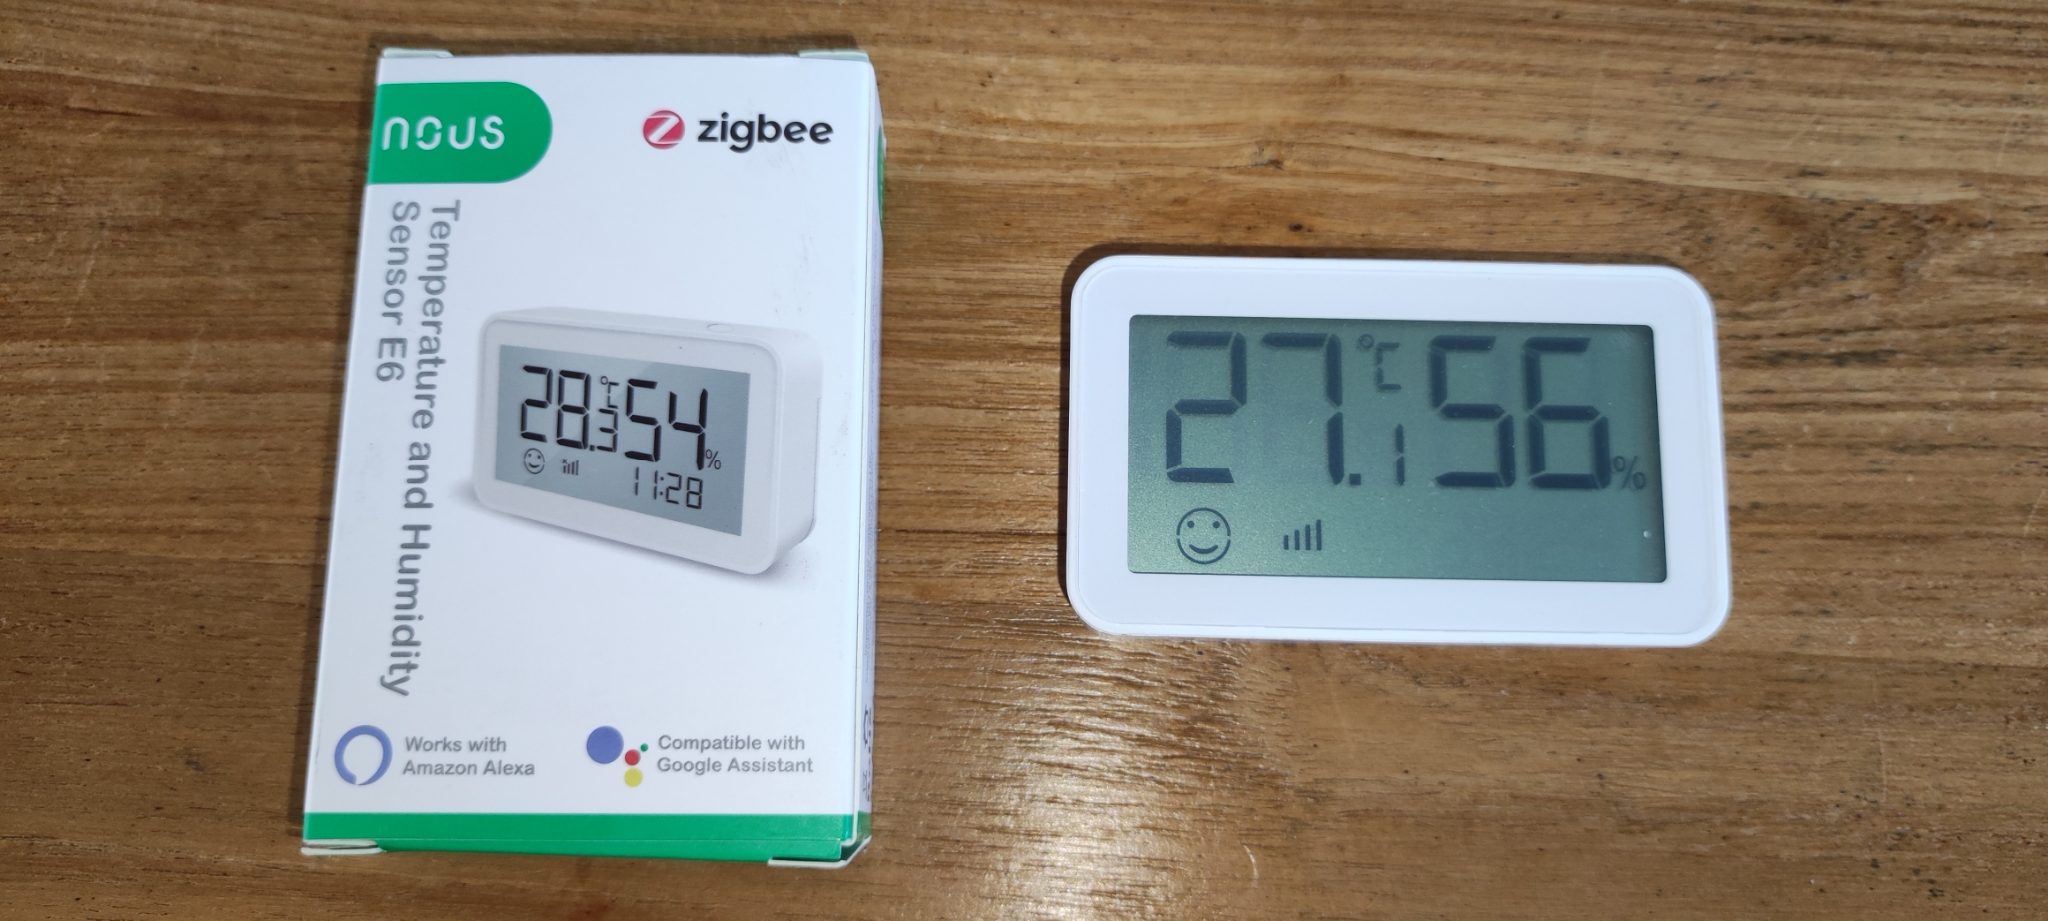 Test NOUS E6 : un capteur de température et d'humidité en ZigBee 3.0 – Les  Alexiens